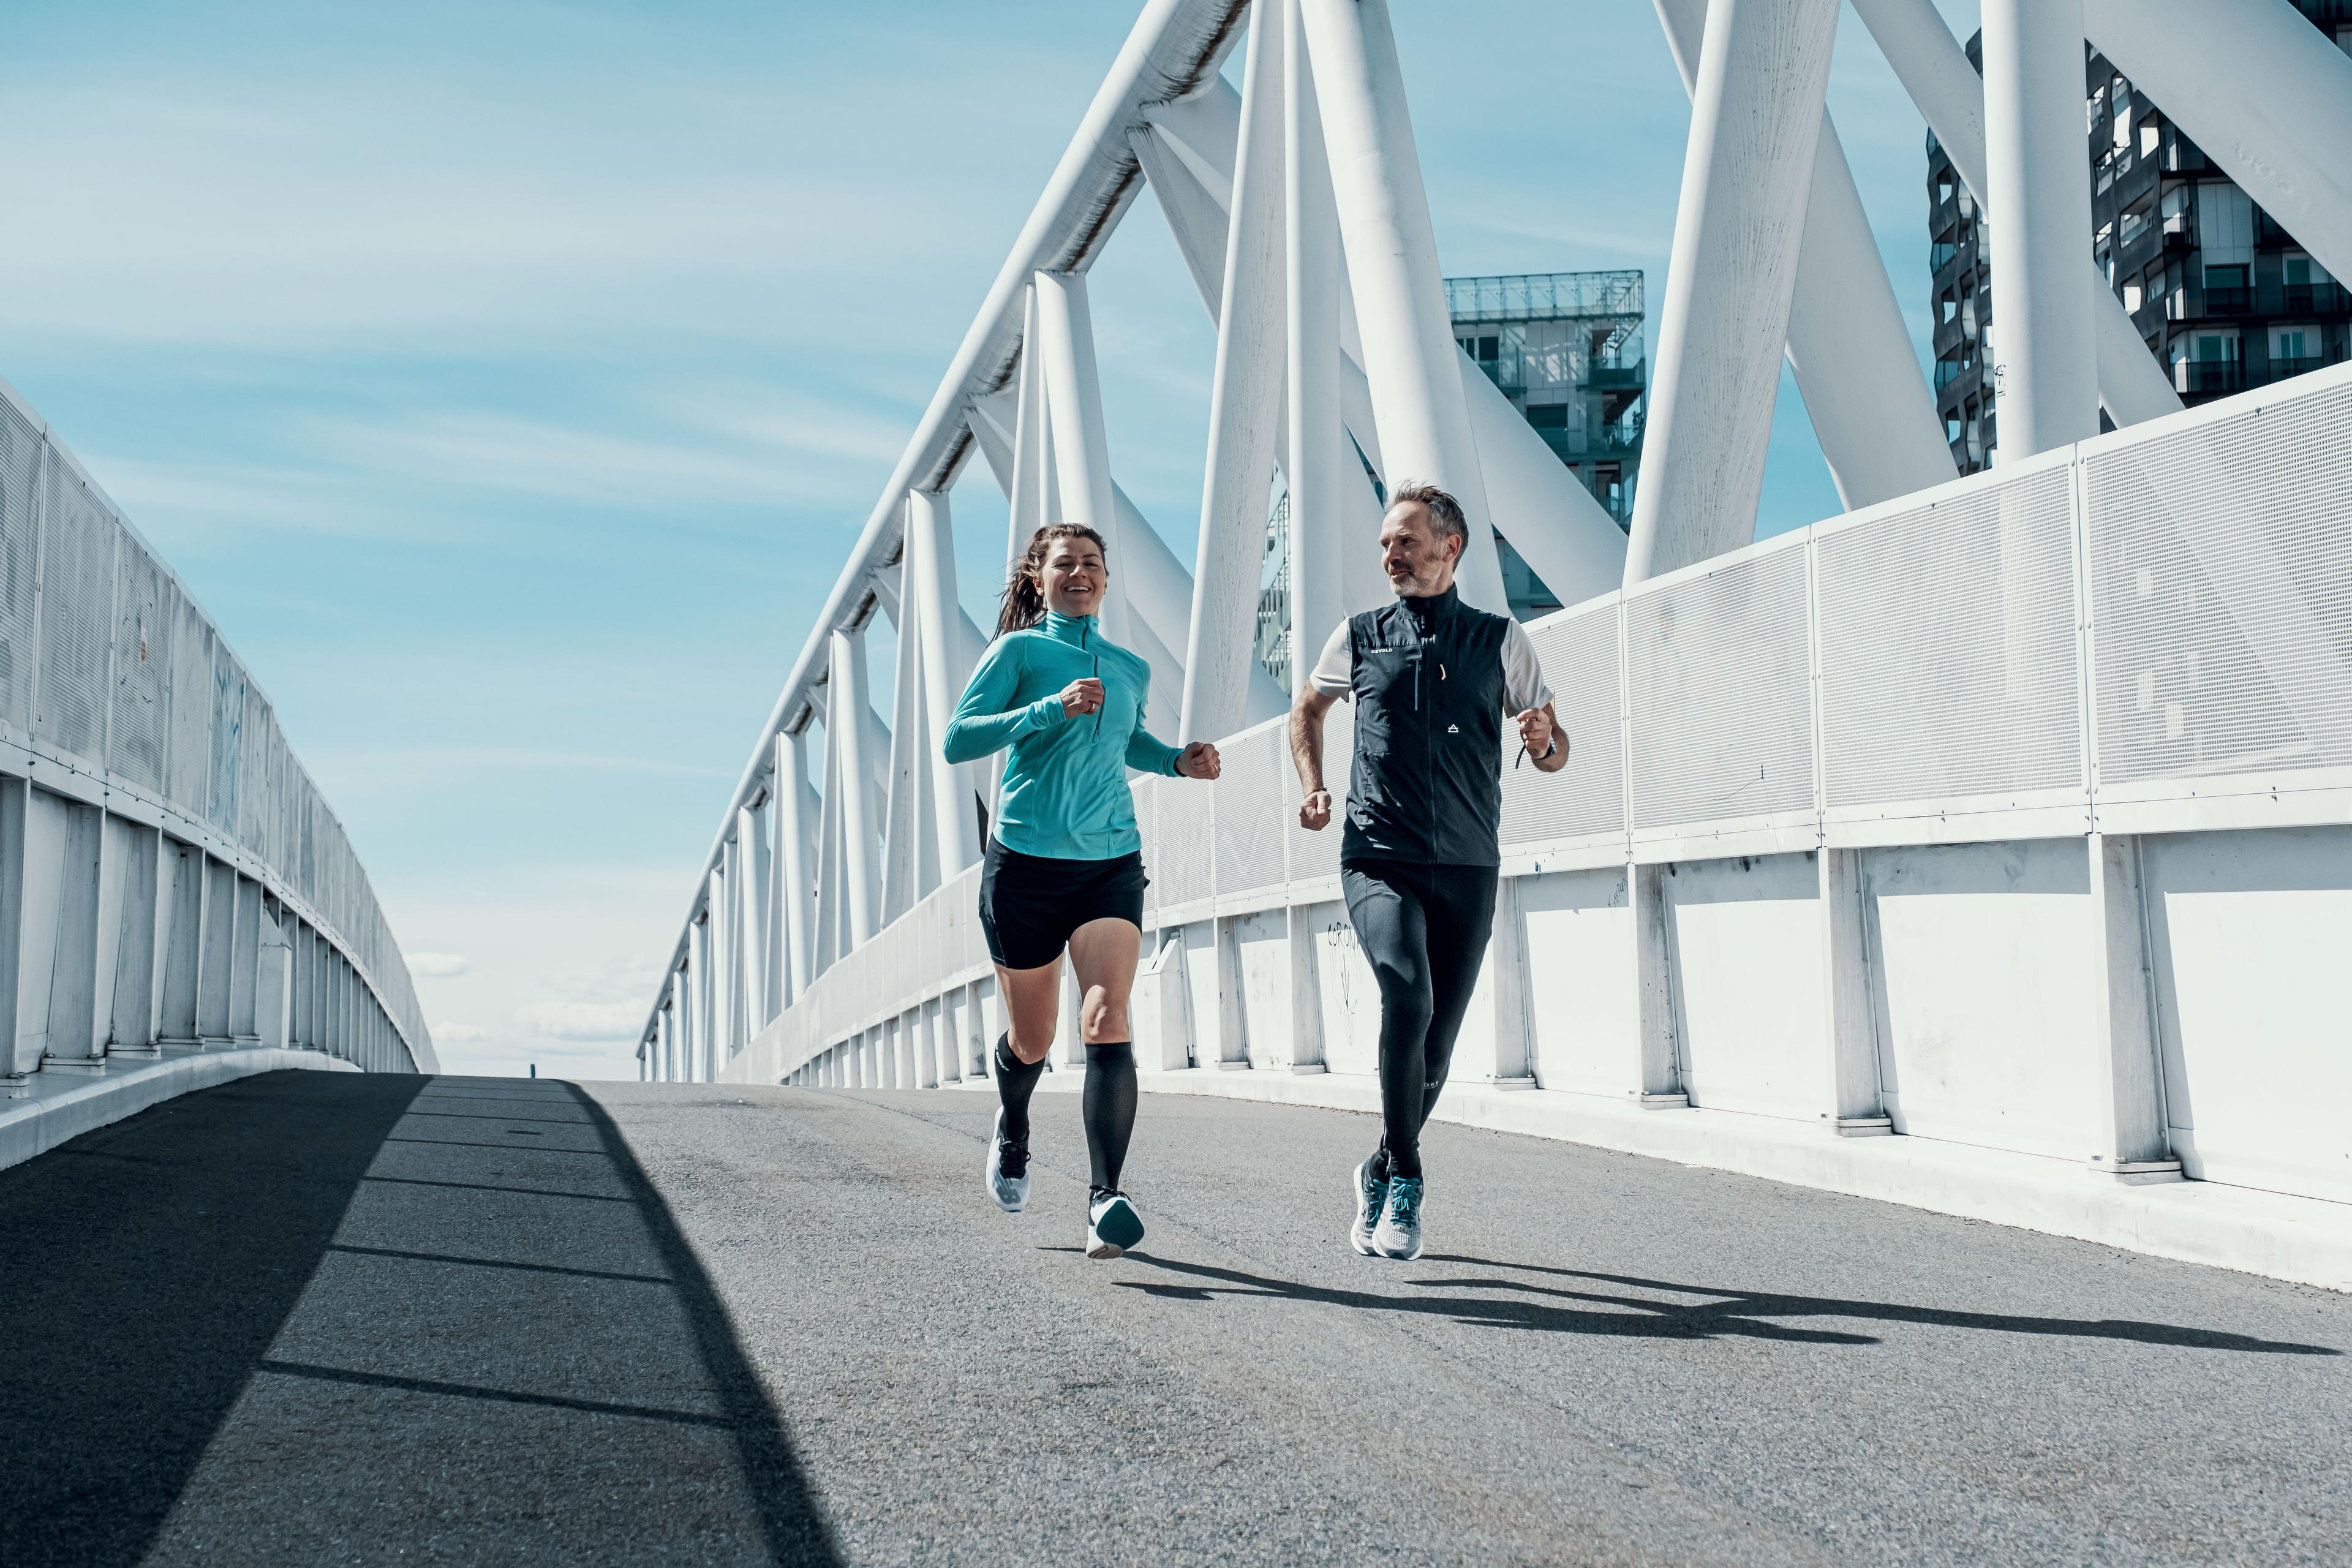 Mann og dame løper utendørs over bro